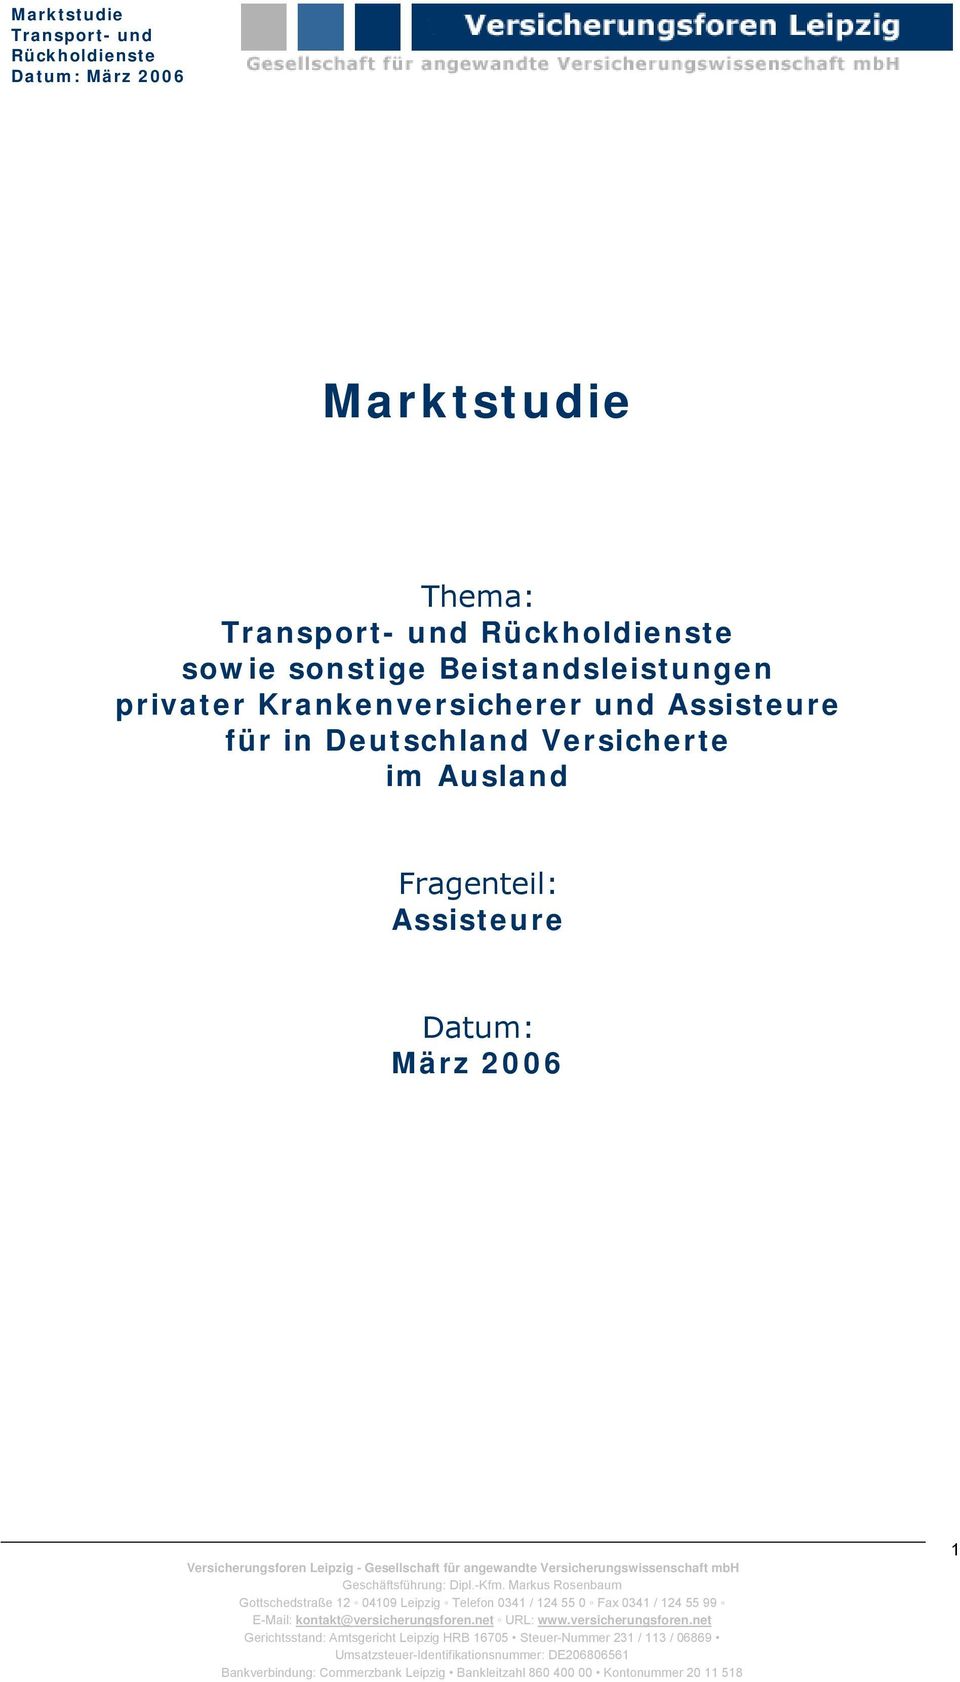 Fragenteil: Assisteure Datum: März 2006 Gerichtsstand: Amtsgericht Leipzig